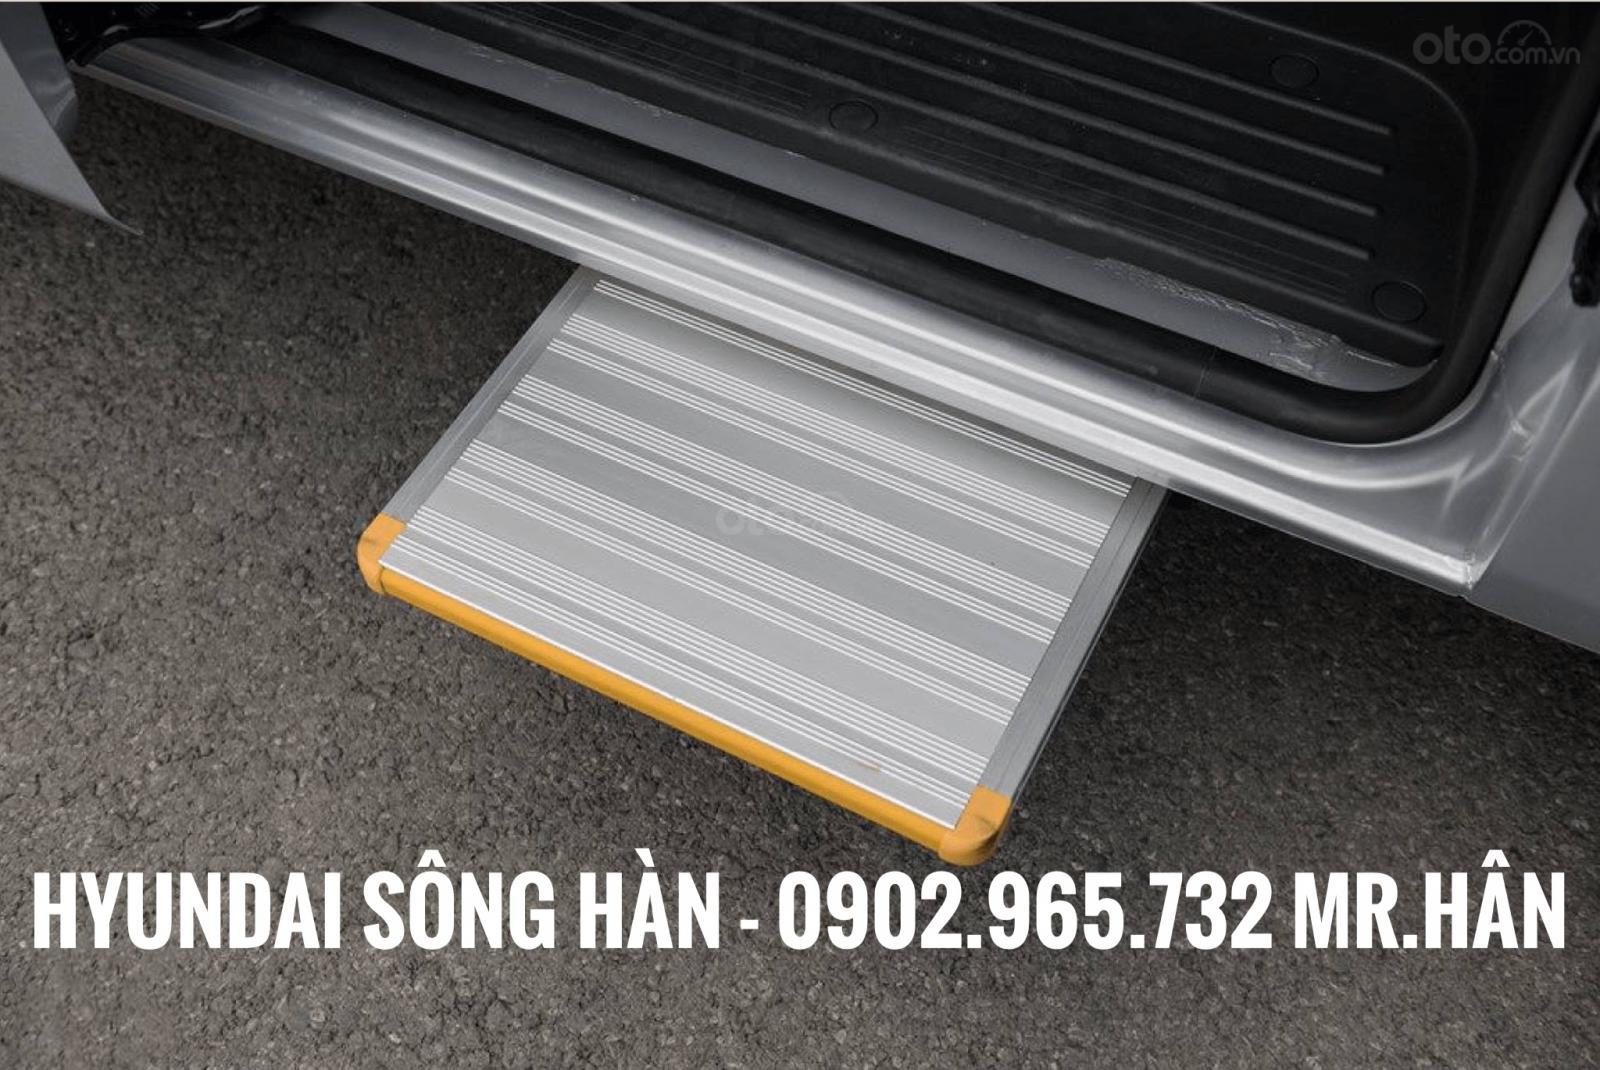 Bán Hyundai Solati 2019 tại Đà Nẵng, liên hệ: Mr. Hân 0902 965 732-12